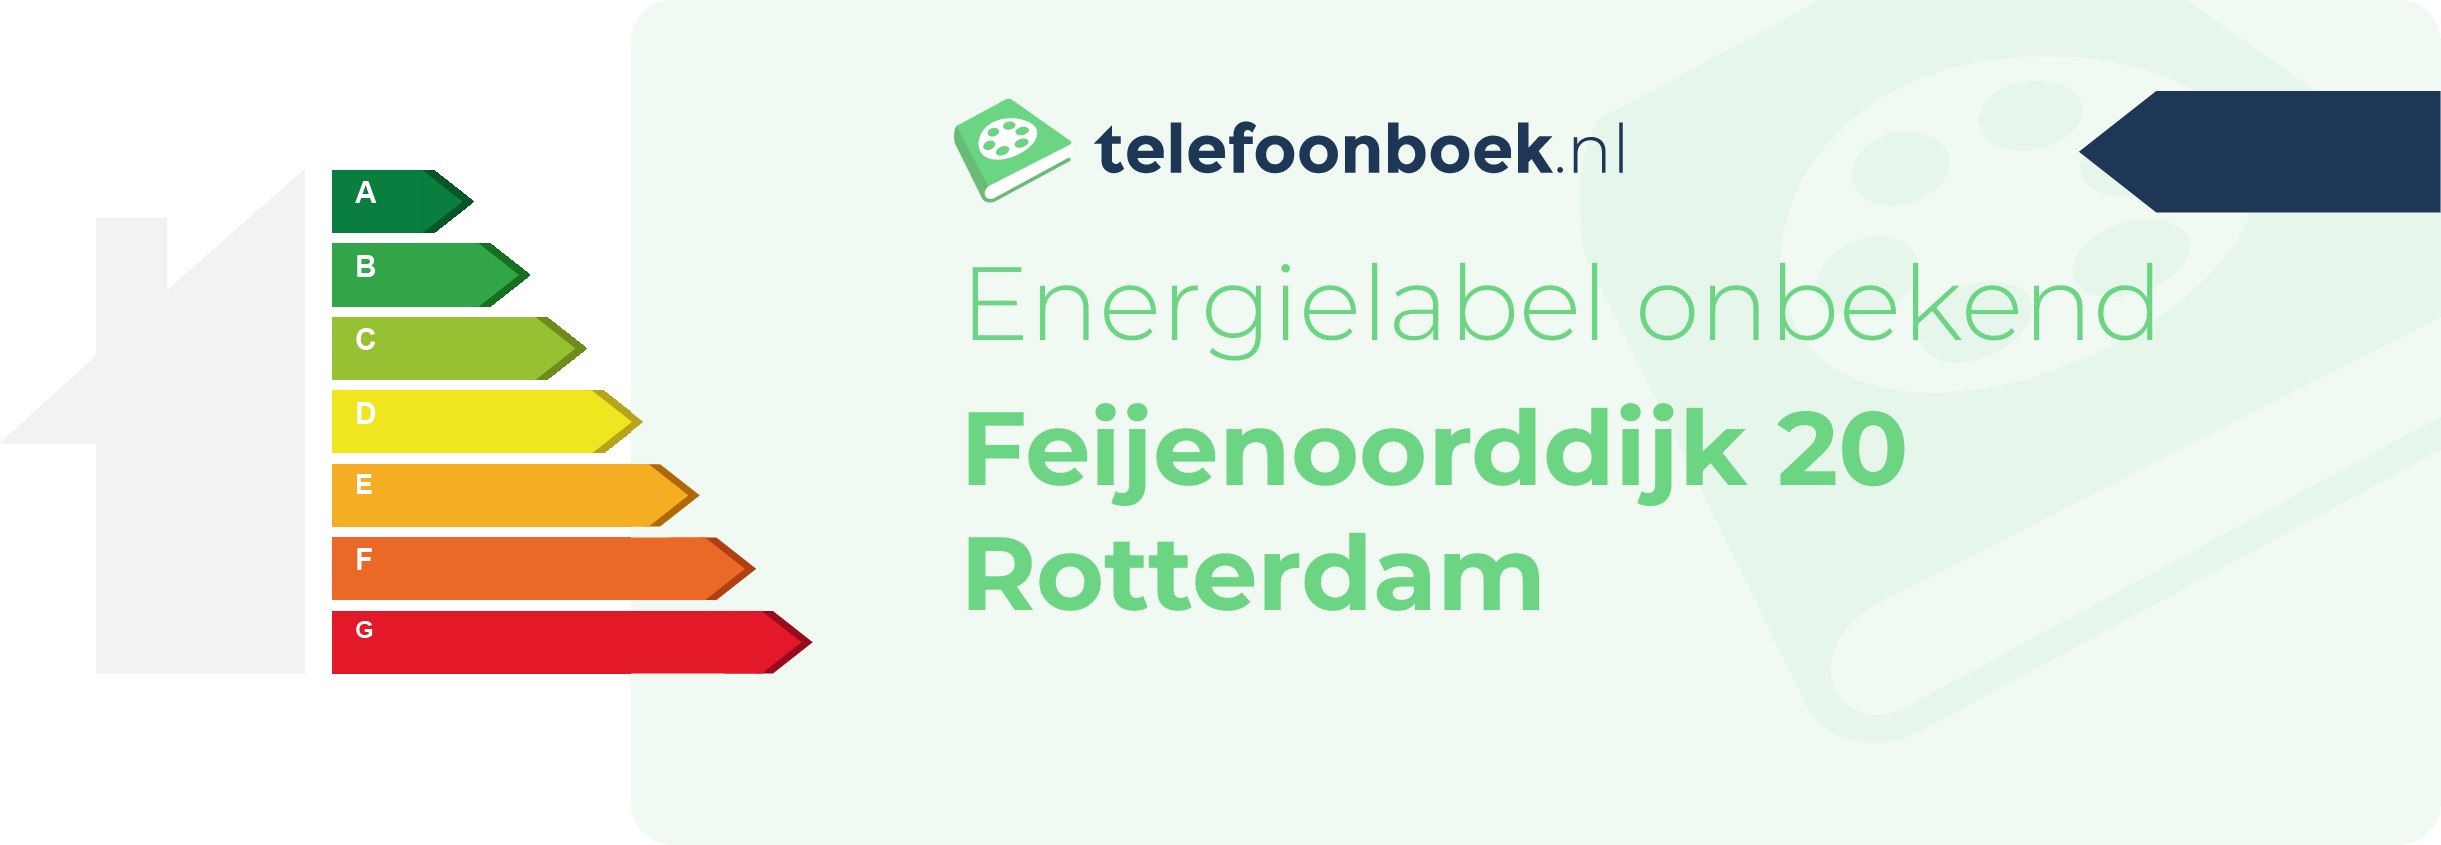 Energielabel Feijenoorddijk 20 Rotterdam